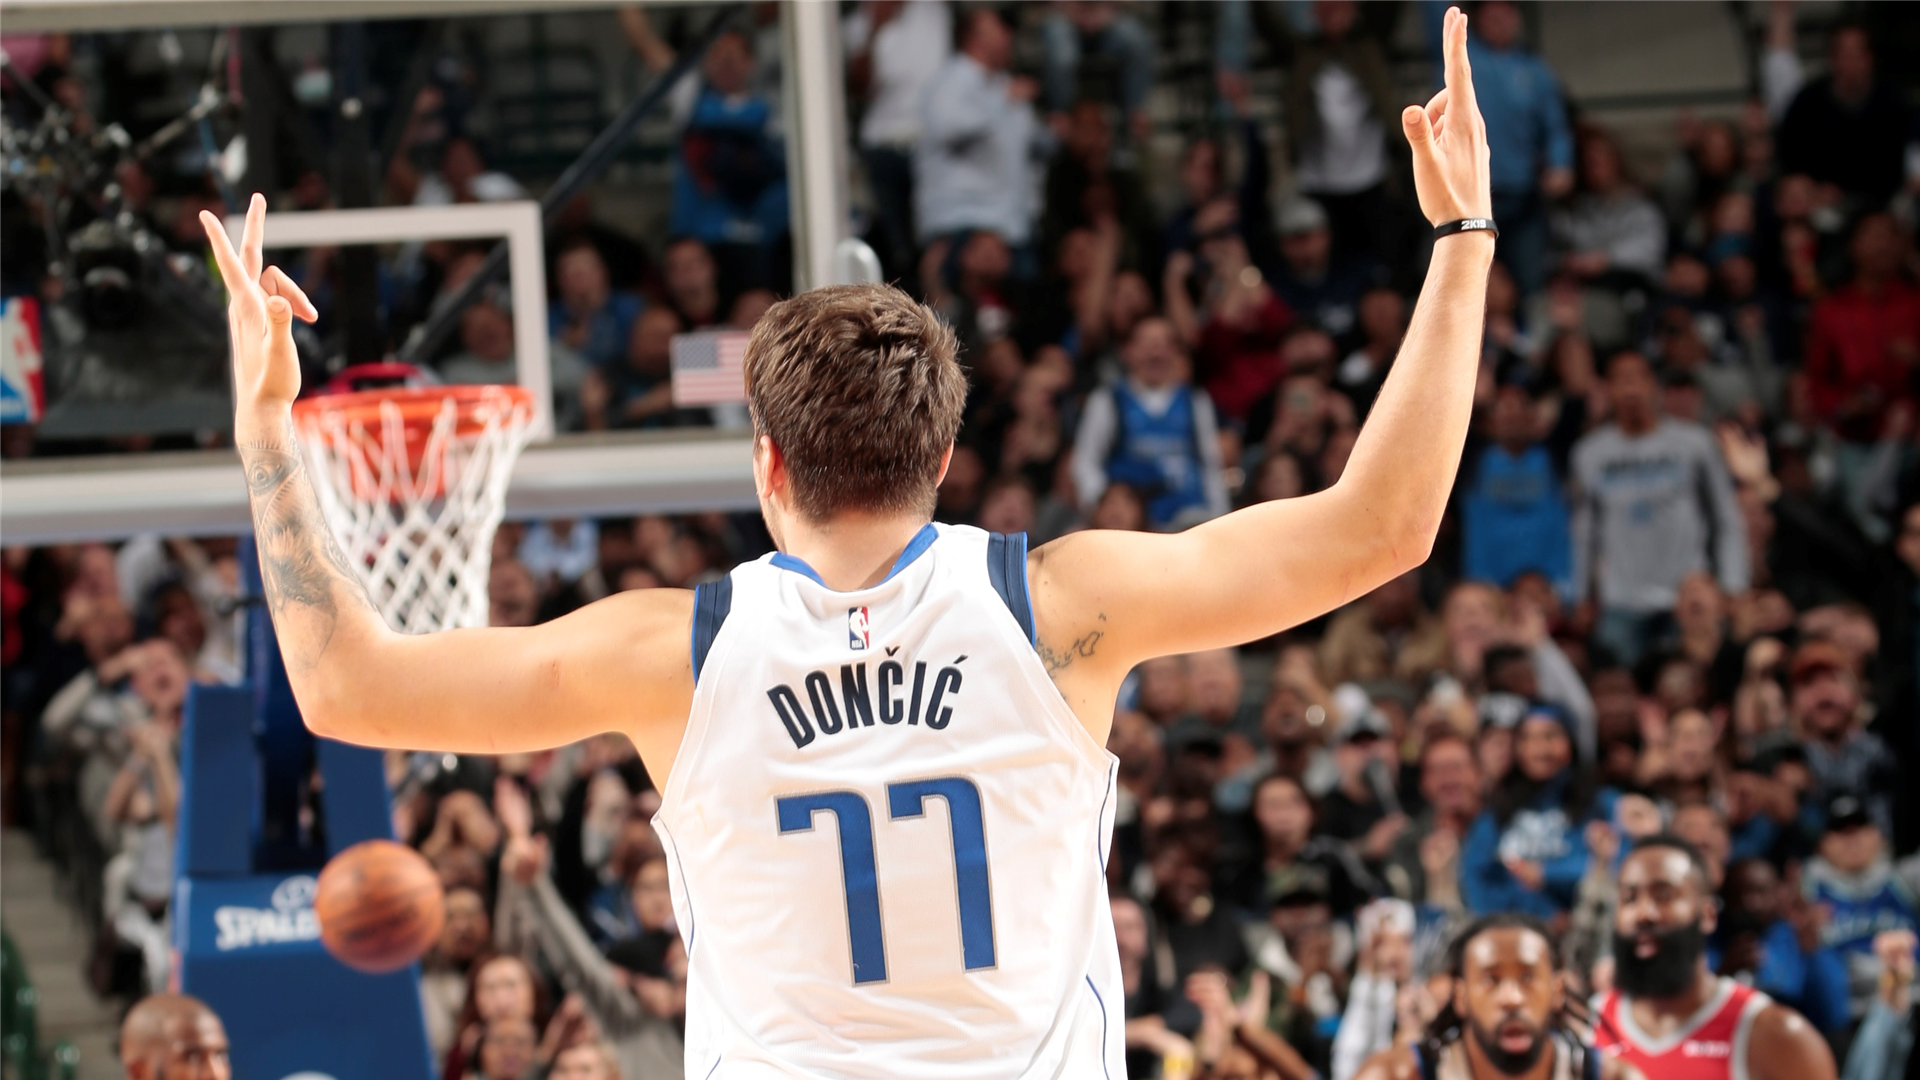 Huyền thoại Dallas Mavericks ca ngợi IQ bóng rổ thiên tài của Luka Doncic - Ảnh 3.